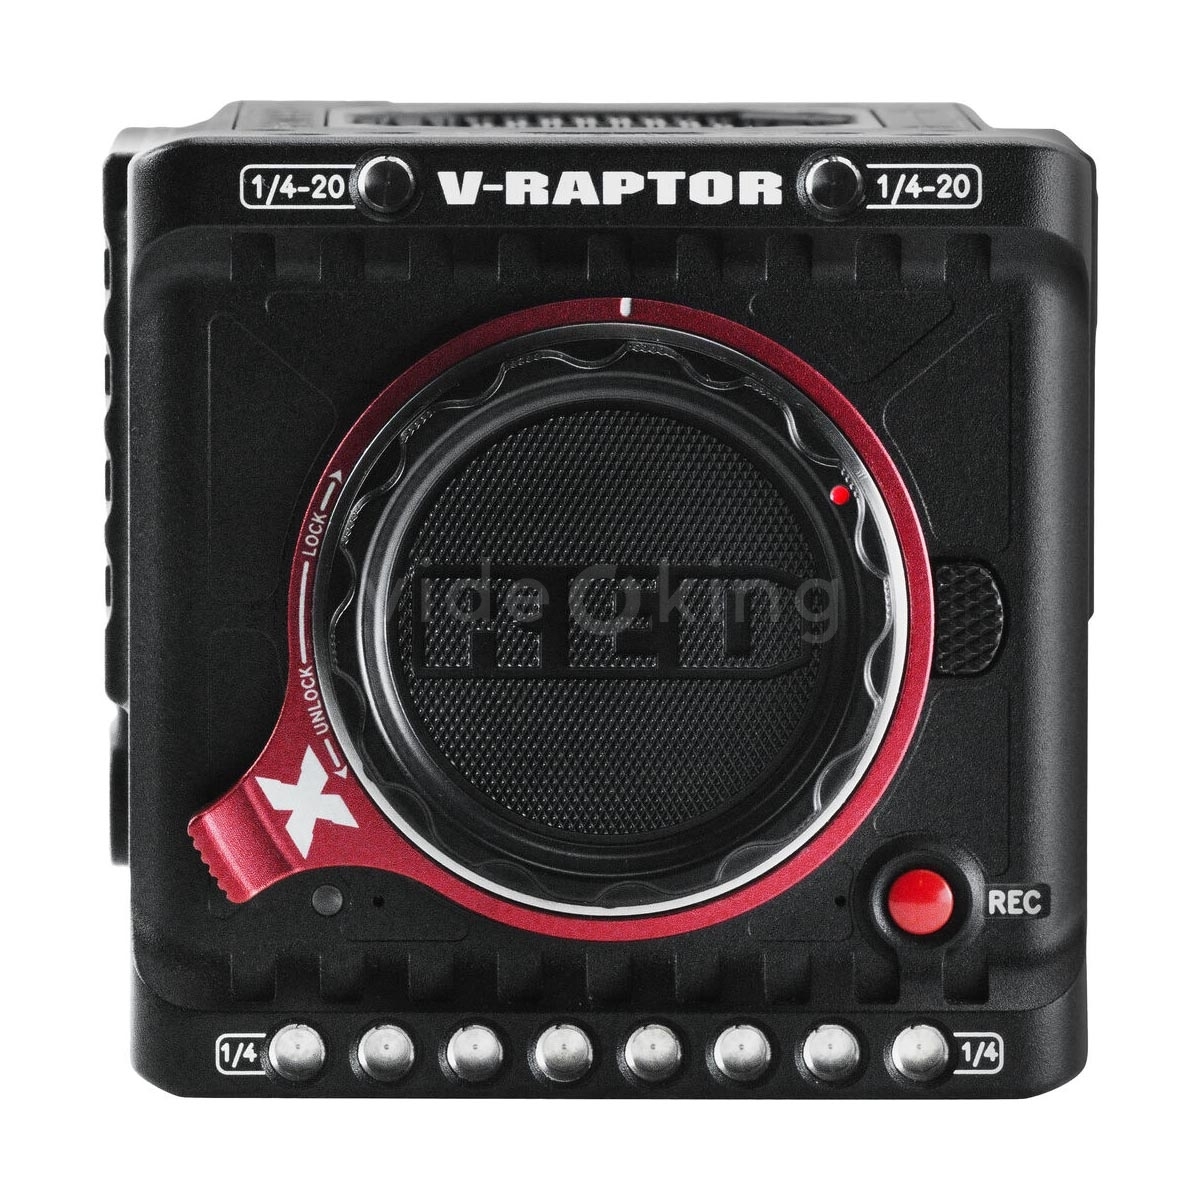 RED V-RAPTOR [X] 8K VV Camera (V-Mount)